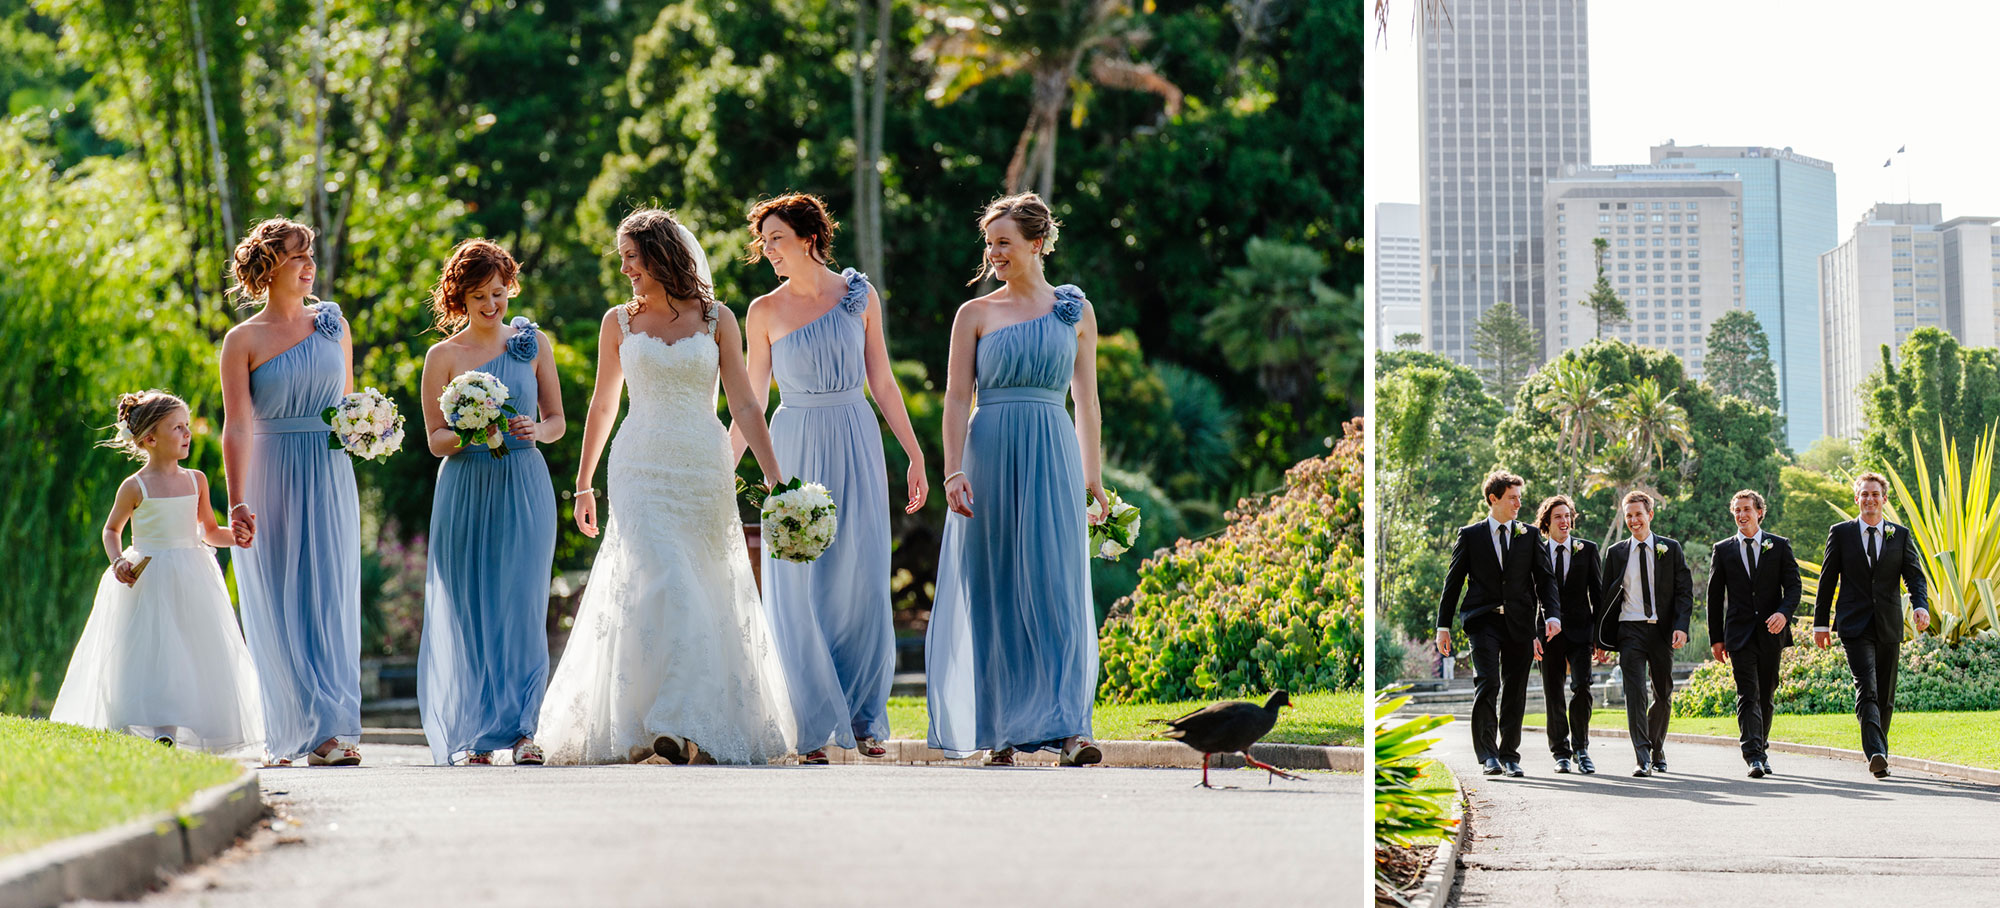 Wedding party in Sydney Botanic Gardens